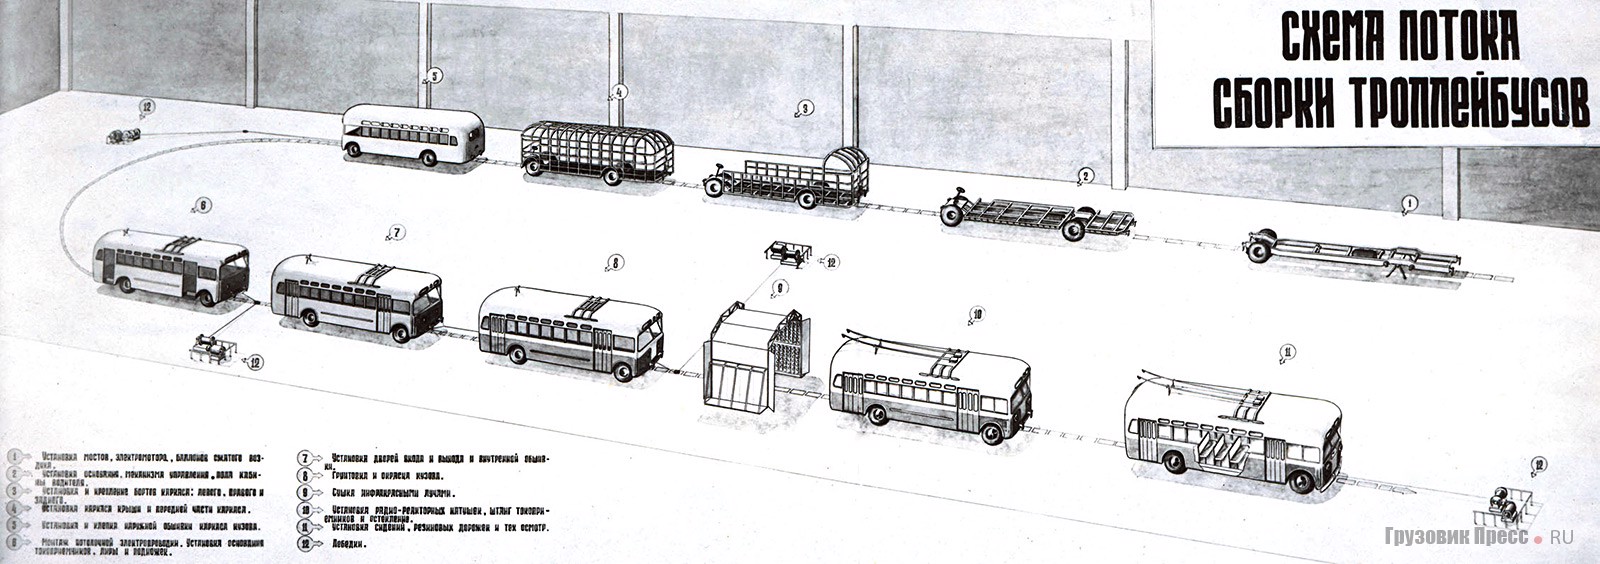 Схема потока сборки троллейбусов МТБ-82 на Тушинском заводе. Это первая в СССР поточная сборка троллейбусов